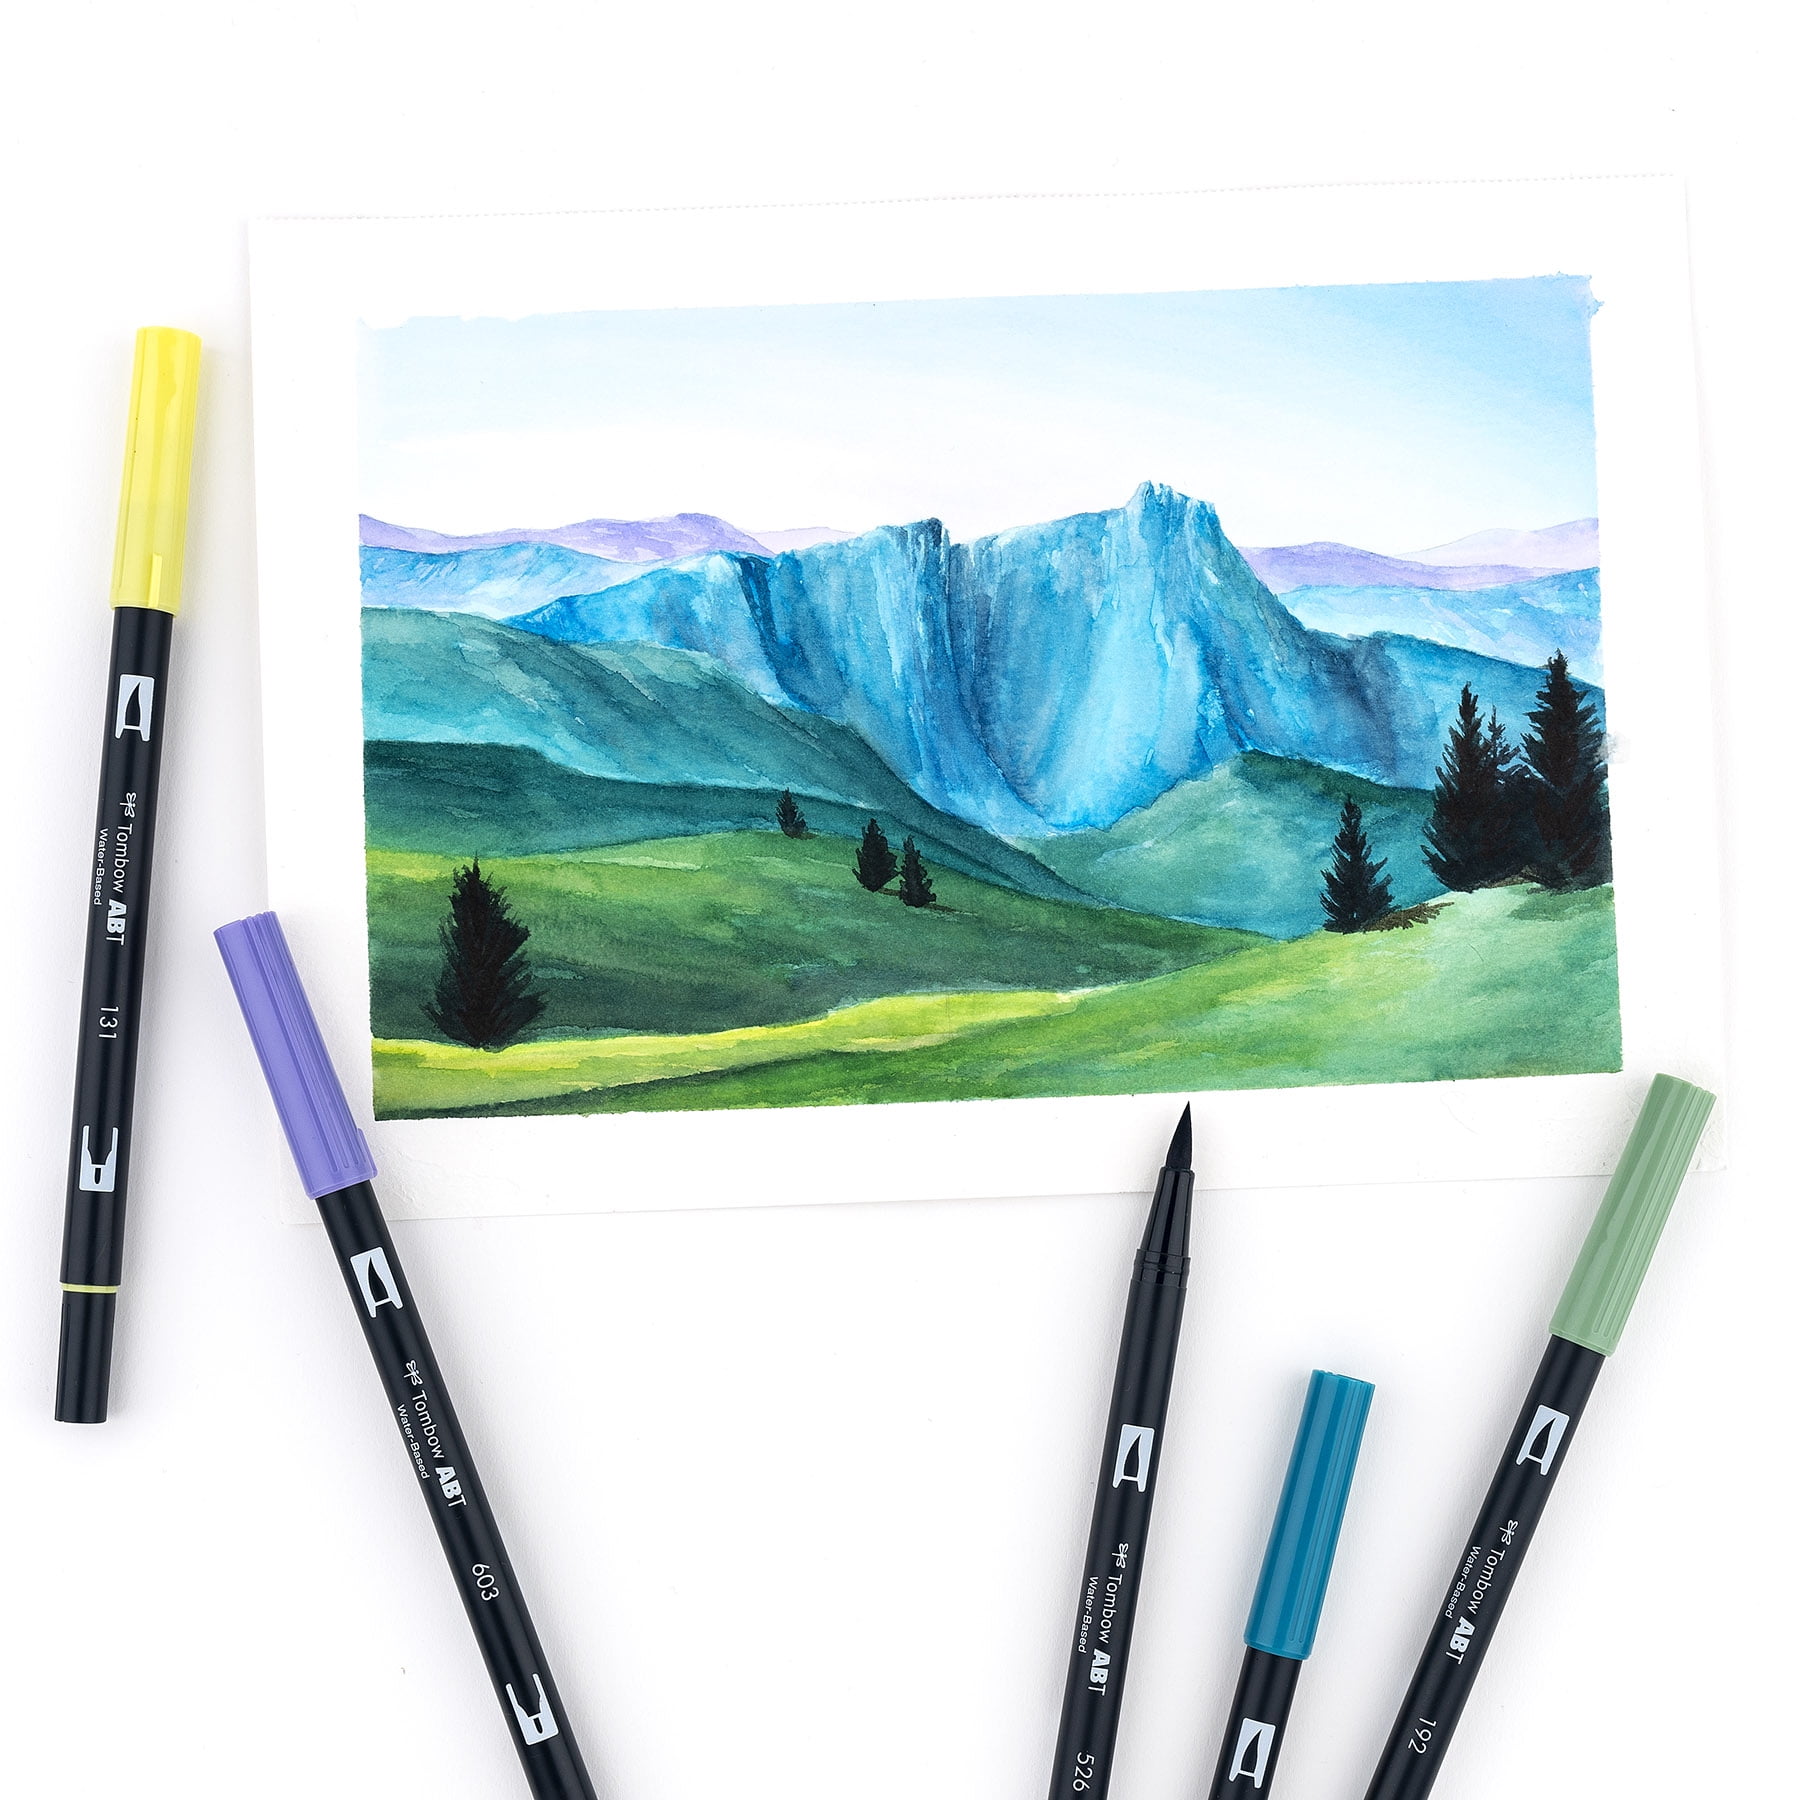 Pastels Dual Brush & Fine Pen Markers Set 6P-2 Tombow Dual Brush Pen Art  Markers Pro Art, Drawing, Coloring Set 